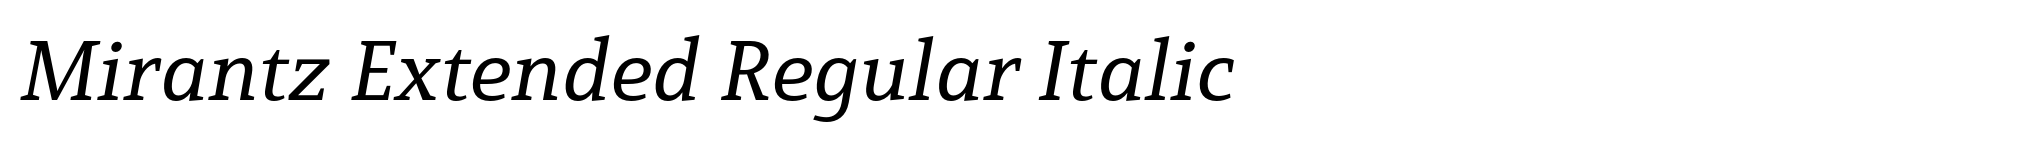 Mirantz Extended Regular Italic image